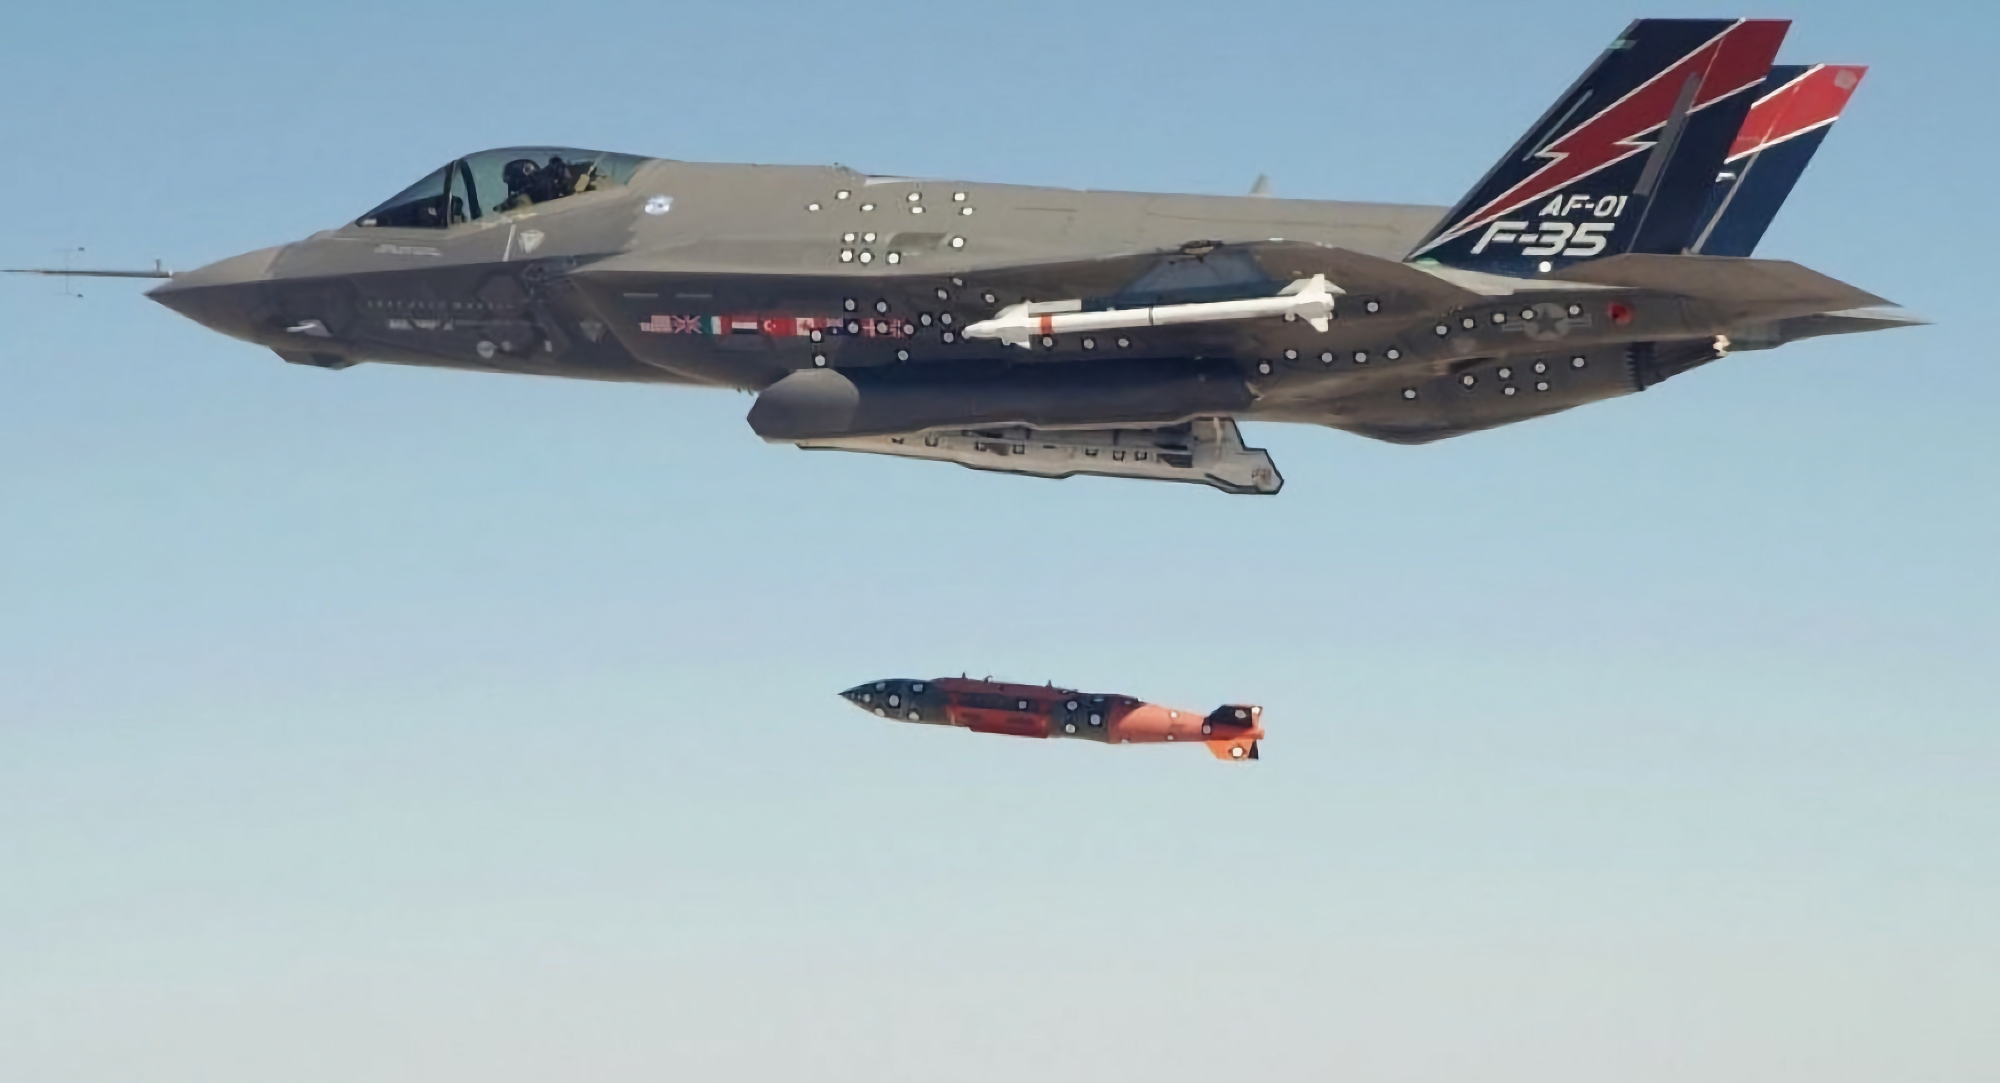 De VS zal een nieuwe variant van de B61 zwaartekrachtbom bouwen - de B61-13 zal de B61-7 vervangen en krachtiger zijn dan de B61-12.